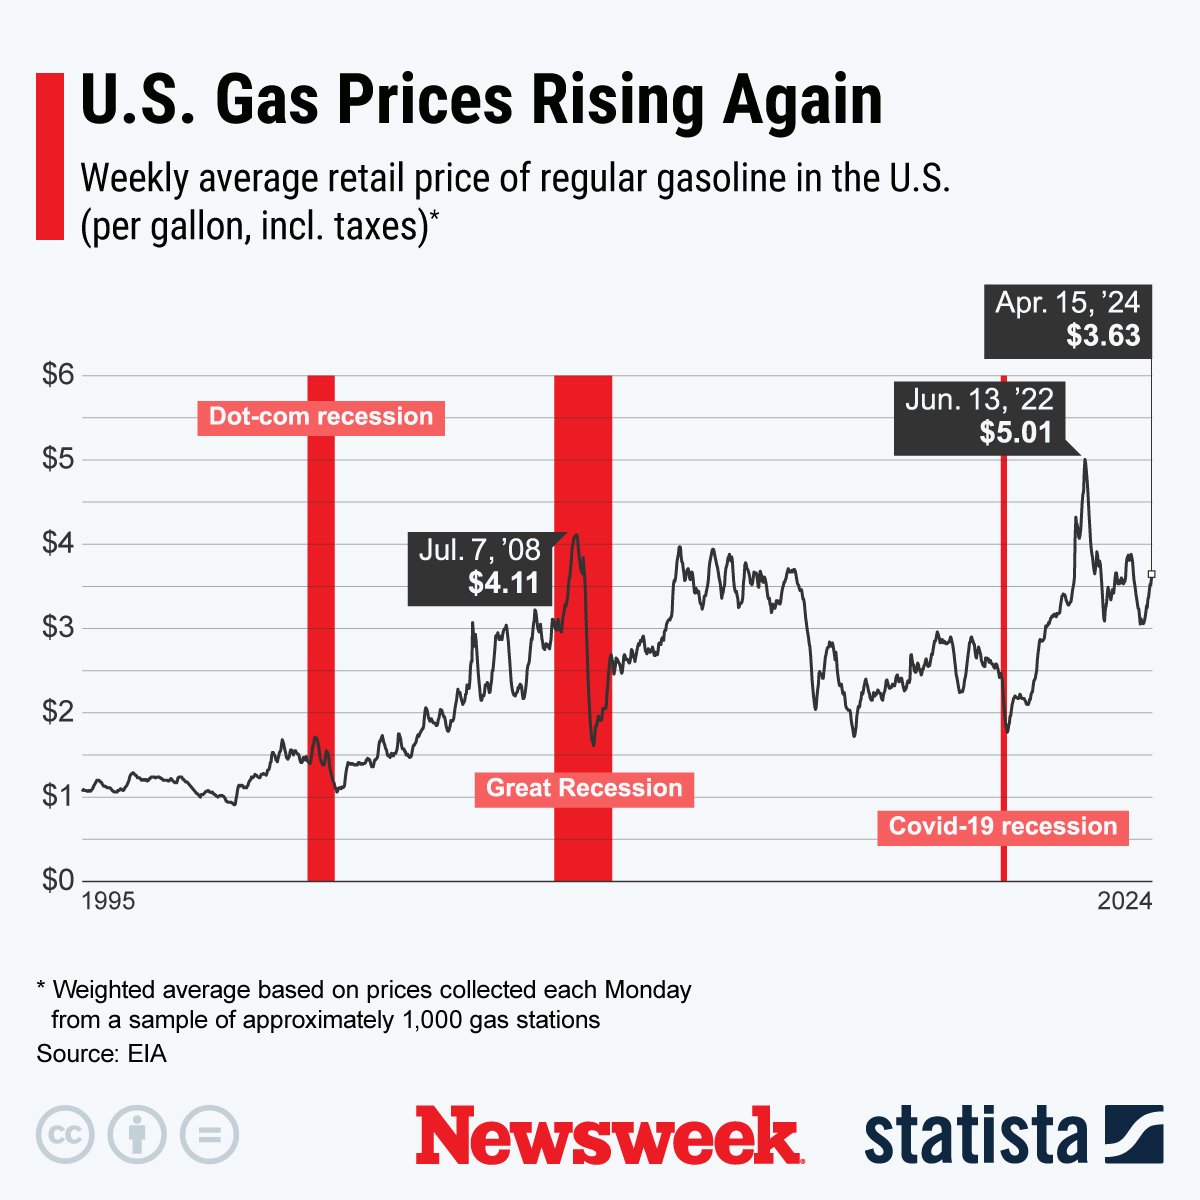 U.S. Gas Prices Rising Again